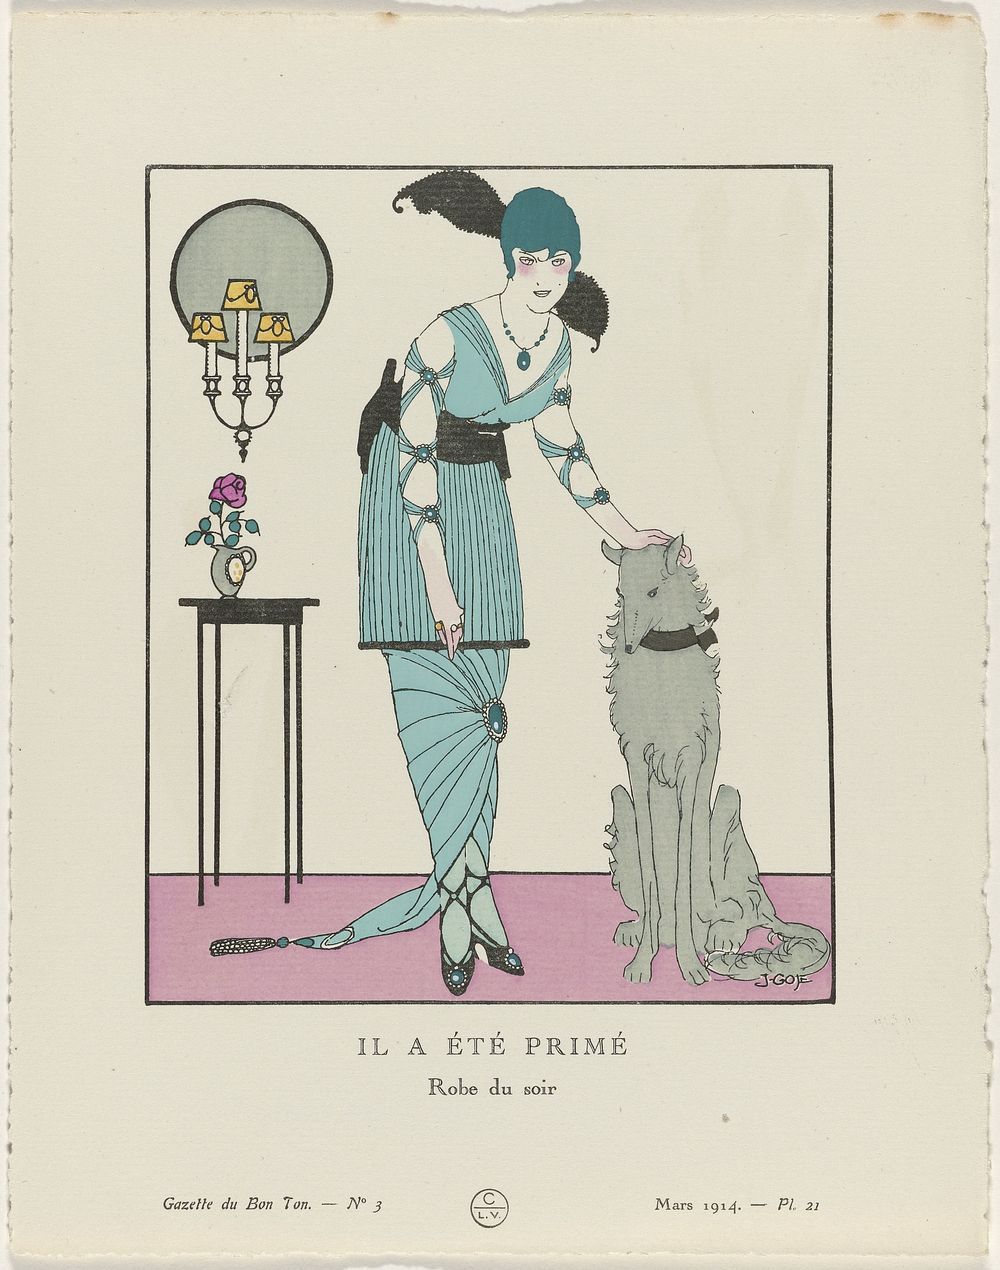 Gazette du Bon Ton. Art – Modes & Frivolités: Artists (1914) by Francisco Javier Gosé, anonymous, Lucien Vogel, Emile Lévy…